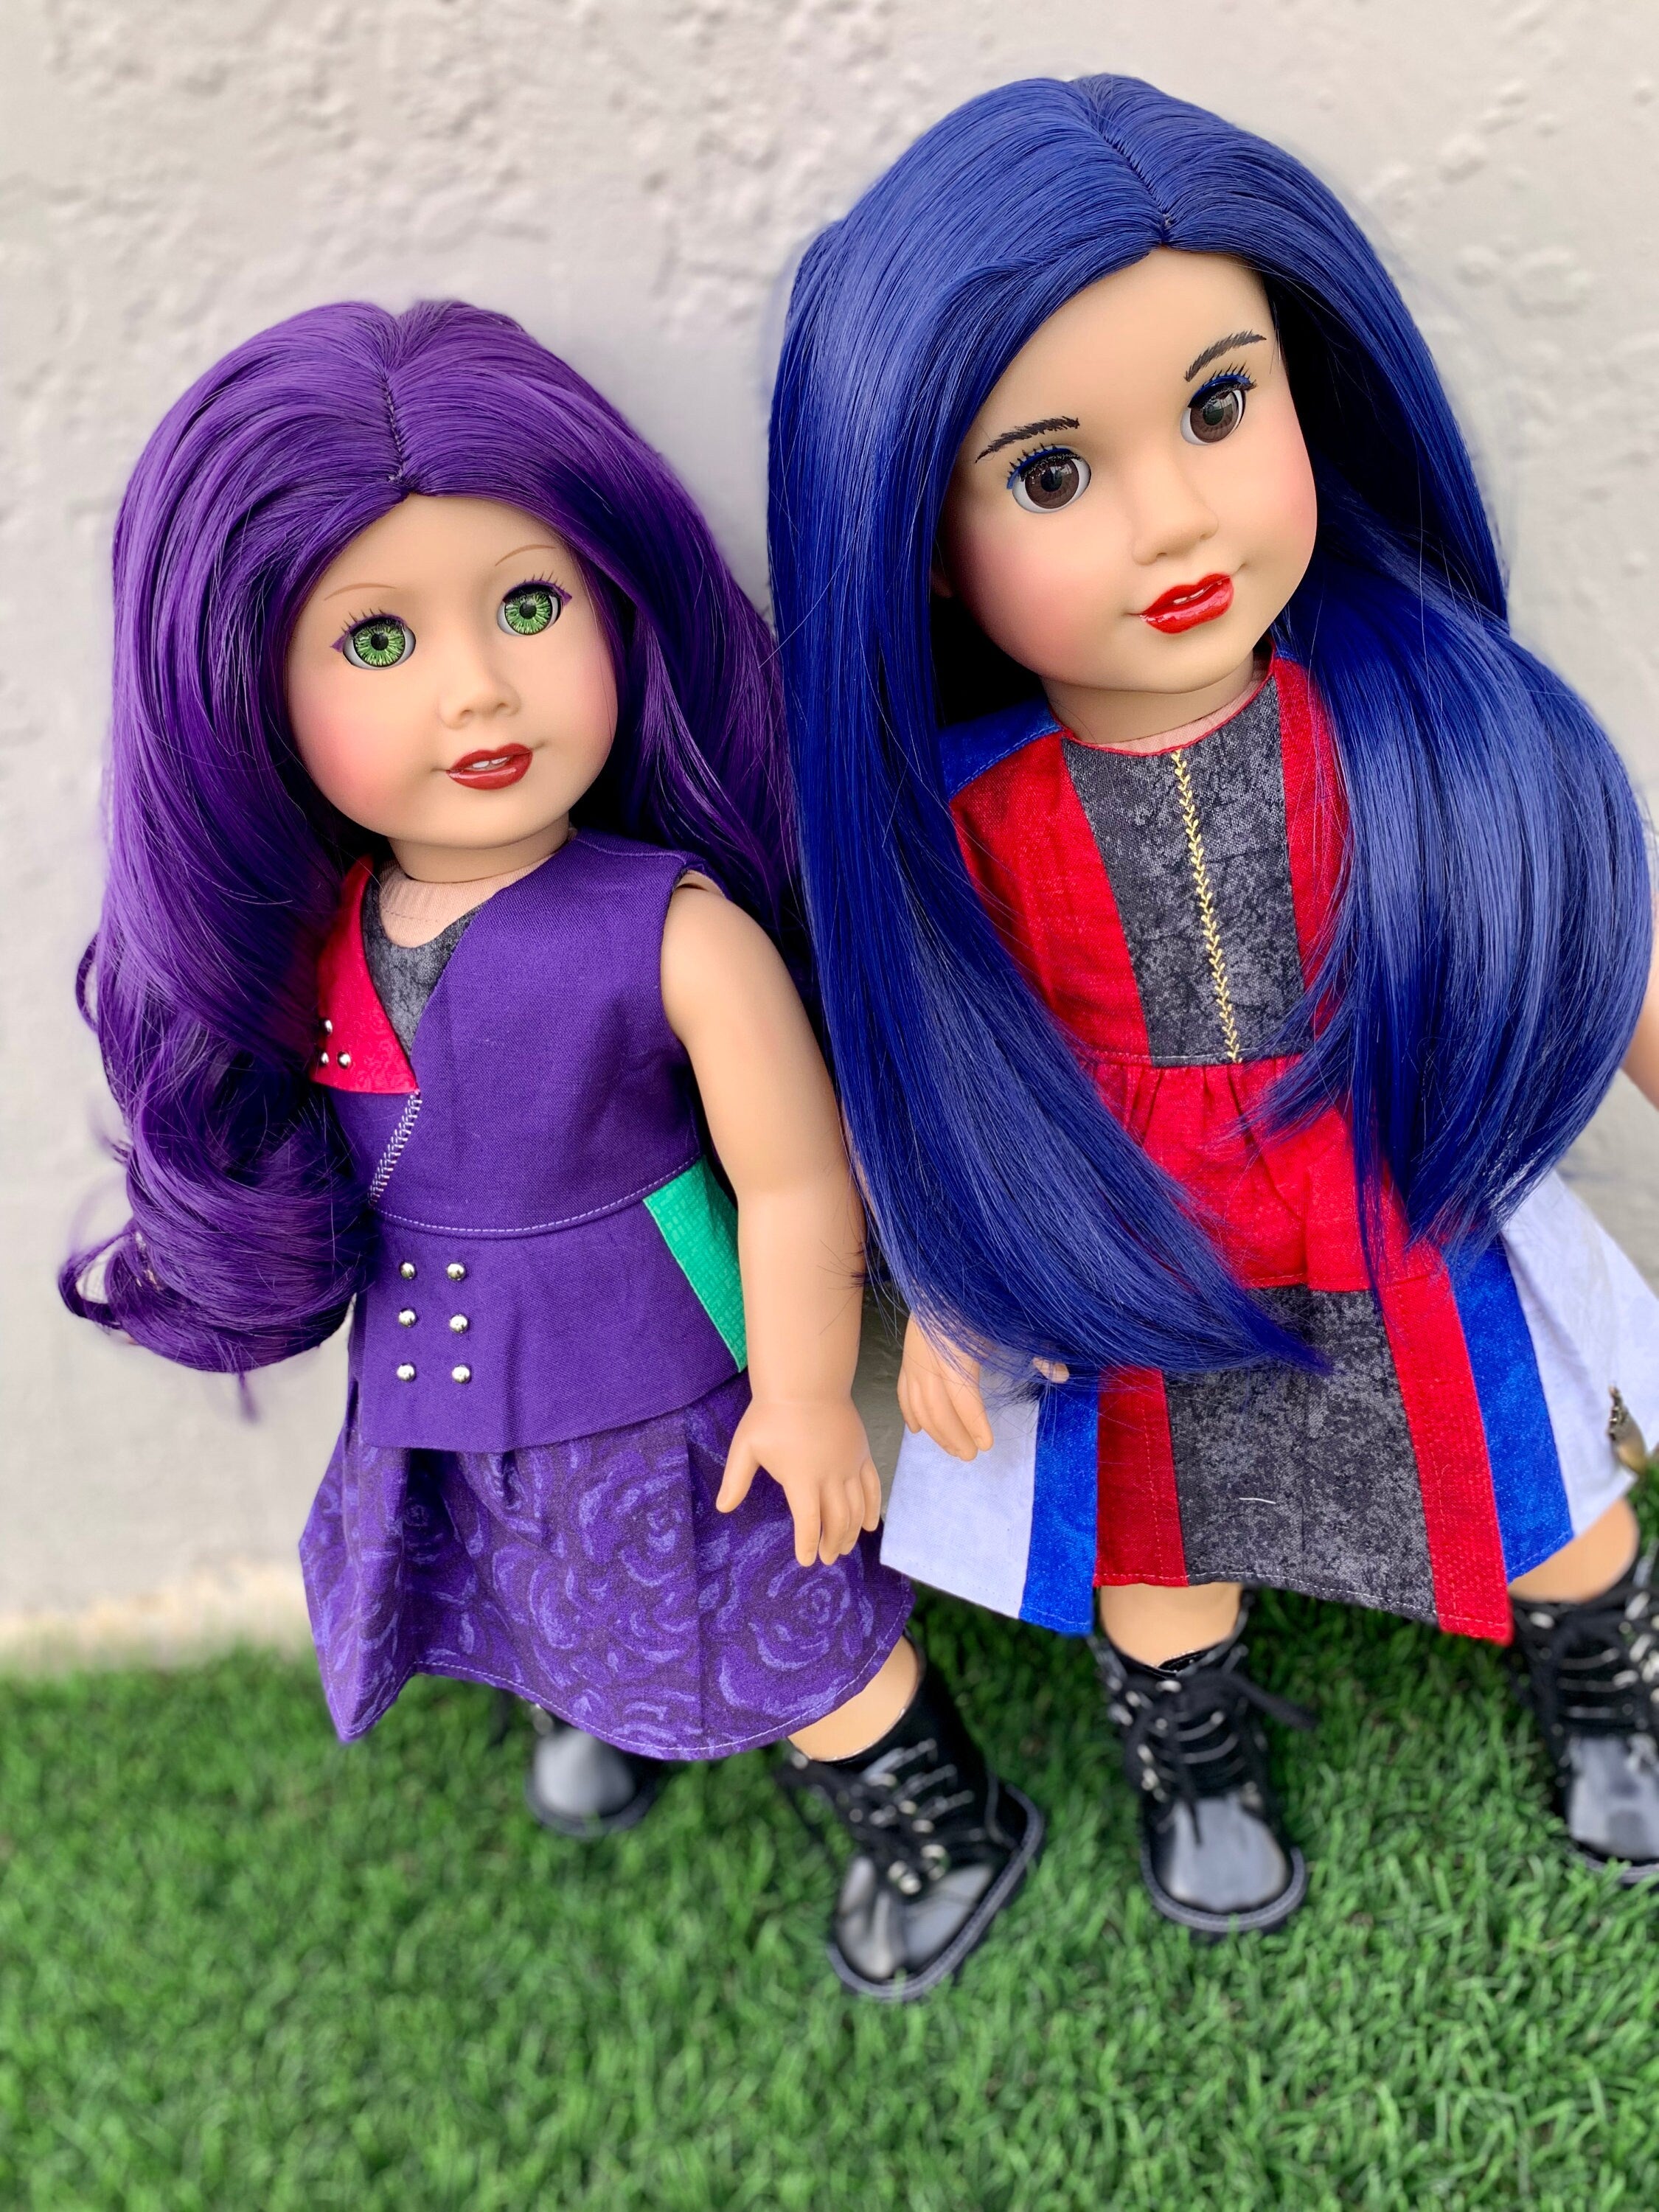 Custom doll wig for 18" American Girl Dolls - Heat Safe - Tangle Resistant - fits 10-11" head size of 18" dolls OG Blythe BJD Gotz Blue Evie